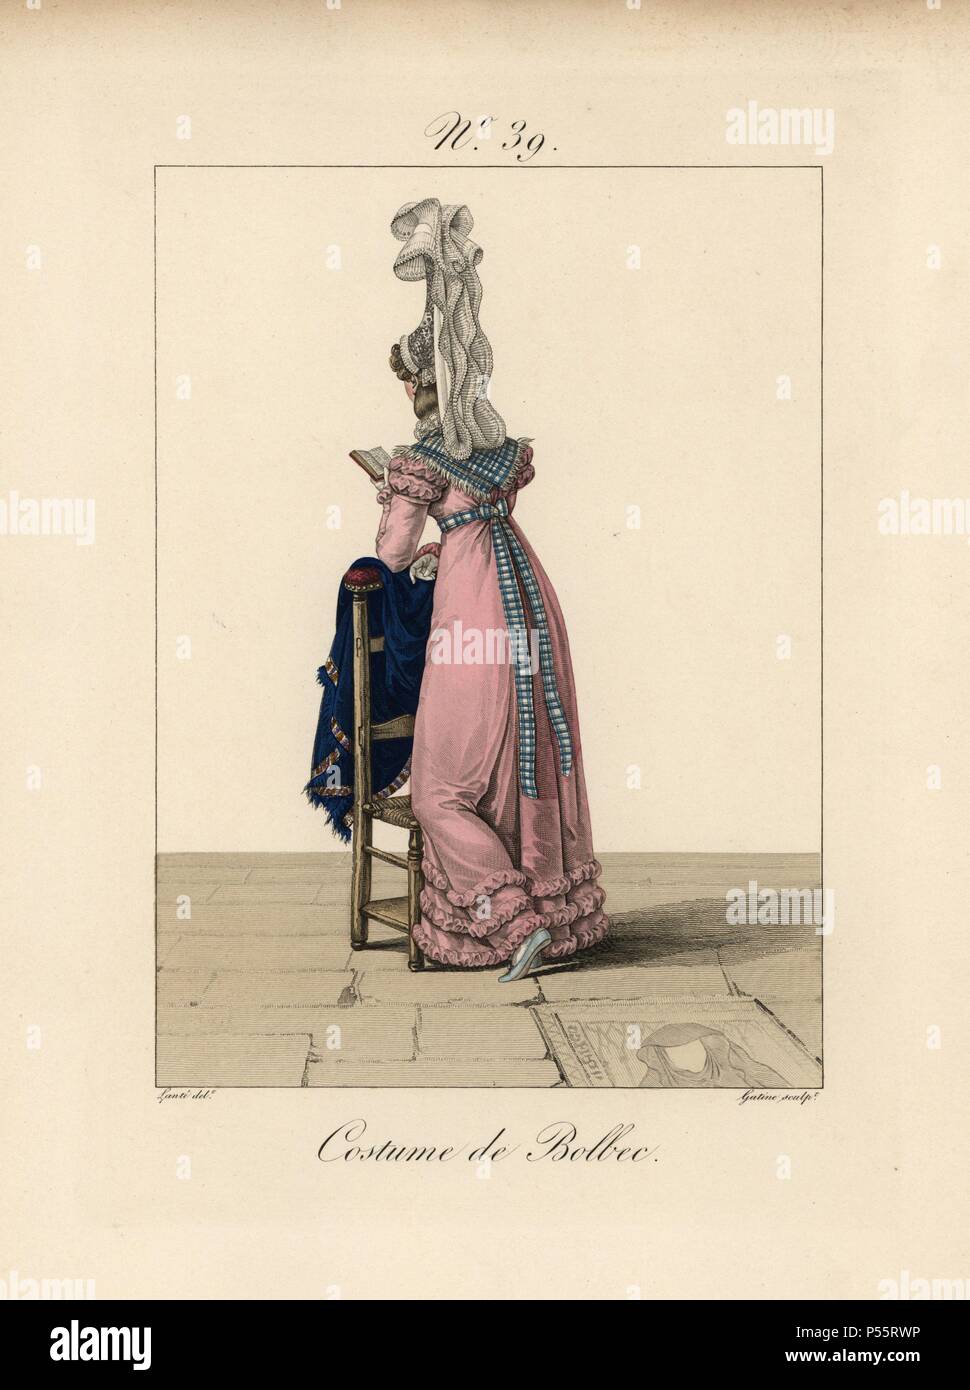 Frau in Tracht von Bolbec, lesen ein Buch, während gegen einen Stuhl ruht. Diese bavolet Motorhaube ist die Schönste, die wir gesehen haben, denn der Schleier aus so großer Höhe mit großer Spielfreude fällt. Handcolorierte mode Platte Illustration von LANTE von Gatine von louis-marie's Lante' Kostüme des Gravierten femmes du Pays de Caux", 1827/1885. Mit ihren hohen Elsässischen spitze Hüte, die Frauen von Caux und der Normandie waren berühmt für die Eleganz und Stil. Stockfoto